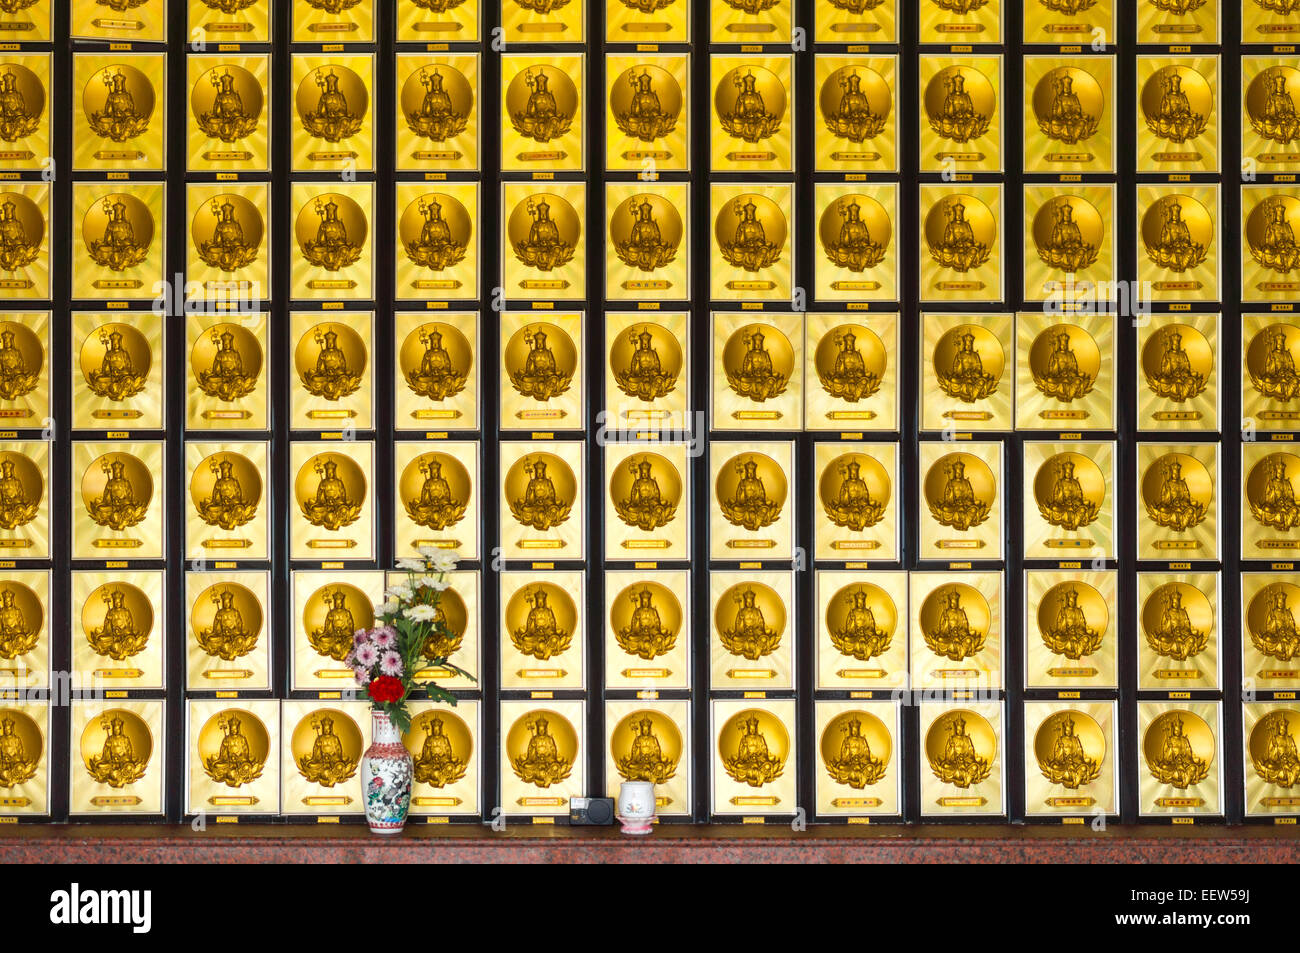 10.000 Buddhas Kloster, Hong Kong, China Stockfoto